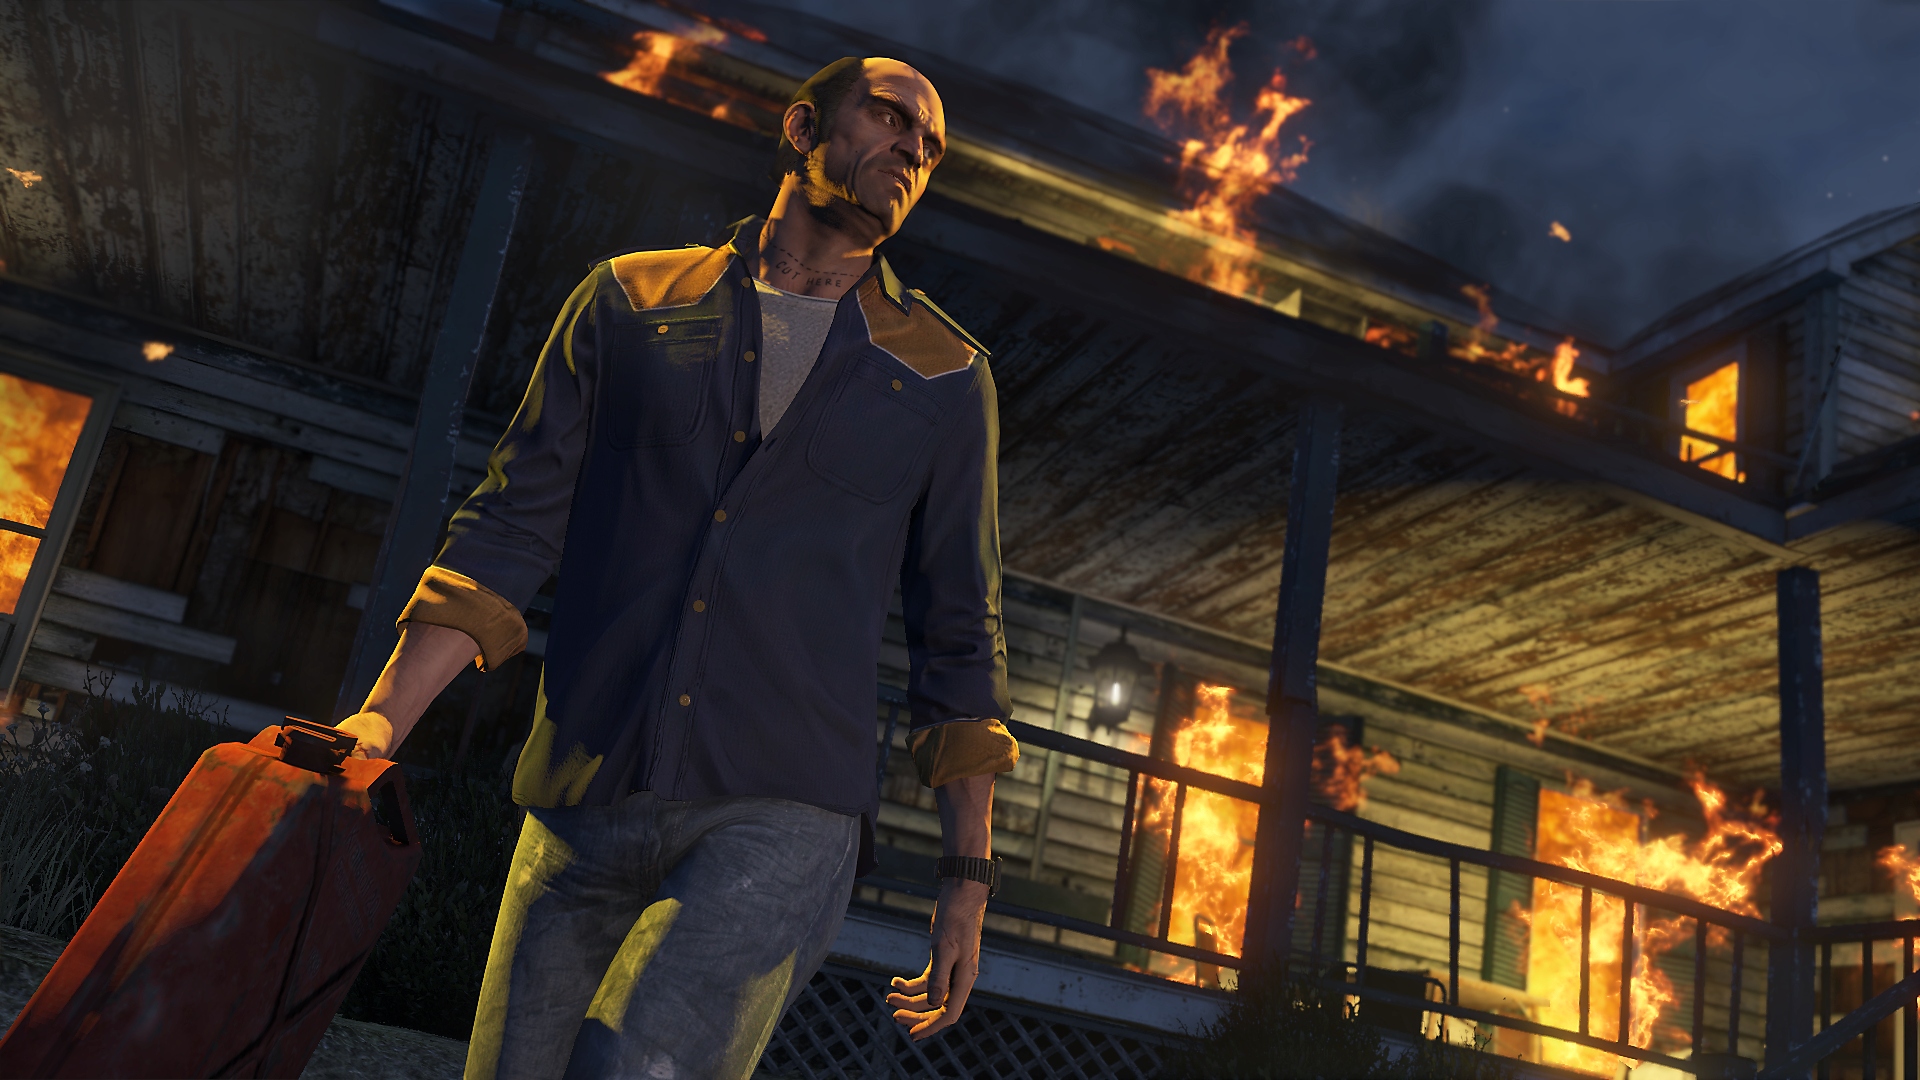 ภาพหน้าจอ Grand Theft Auto V แสดงให้เห็นตัวละครหลัก Trevor เดินออกจากอาคารไฟไหม้ขณะที่ถือถังน้ำมัน